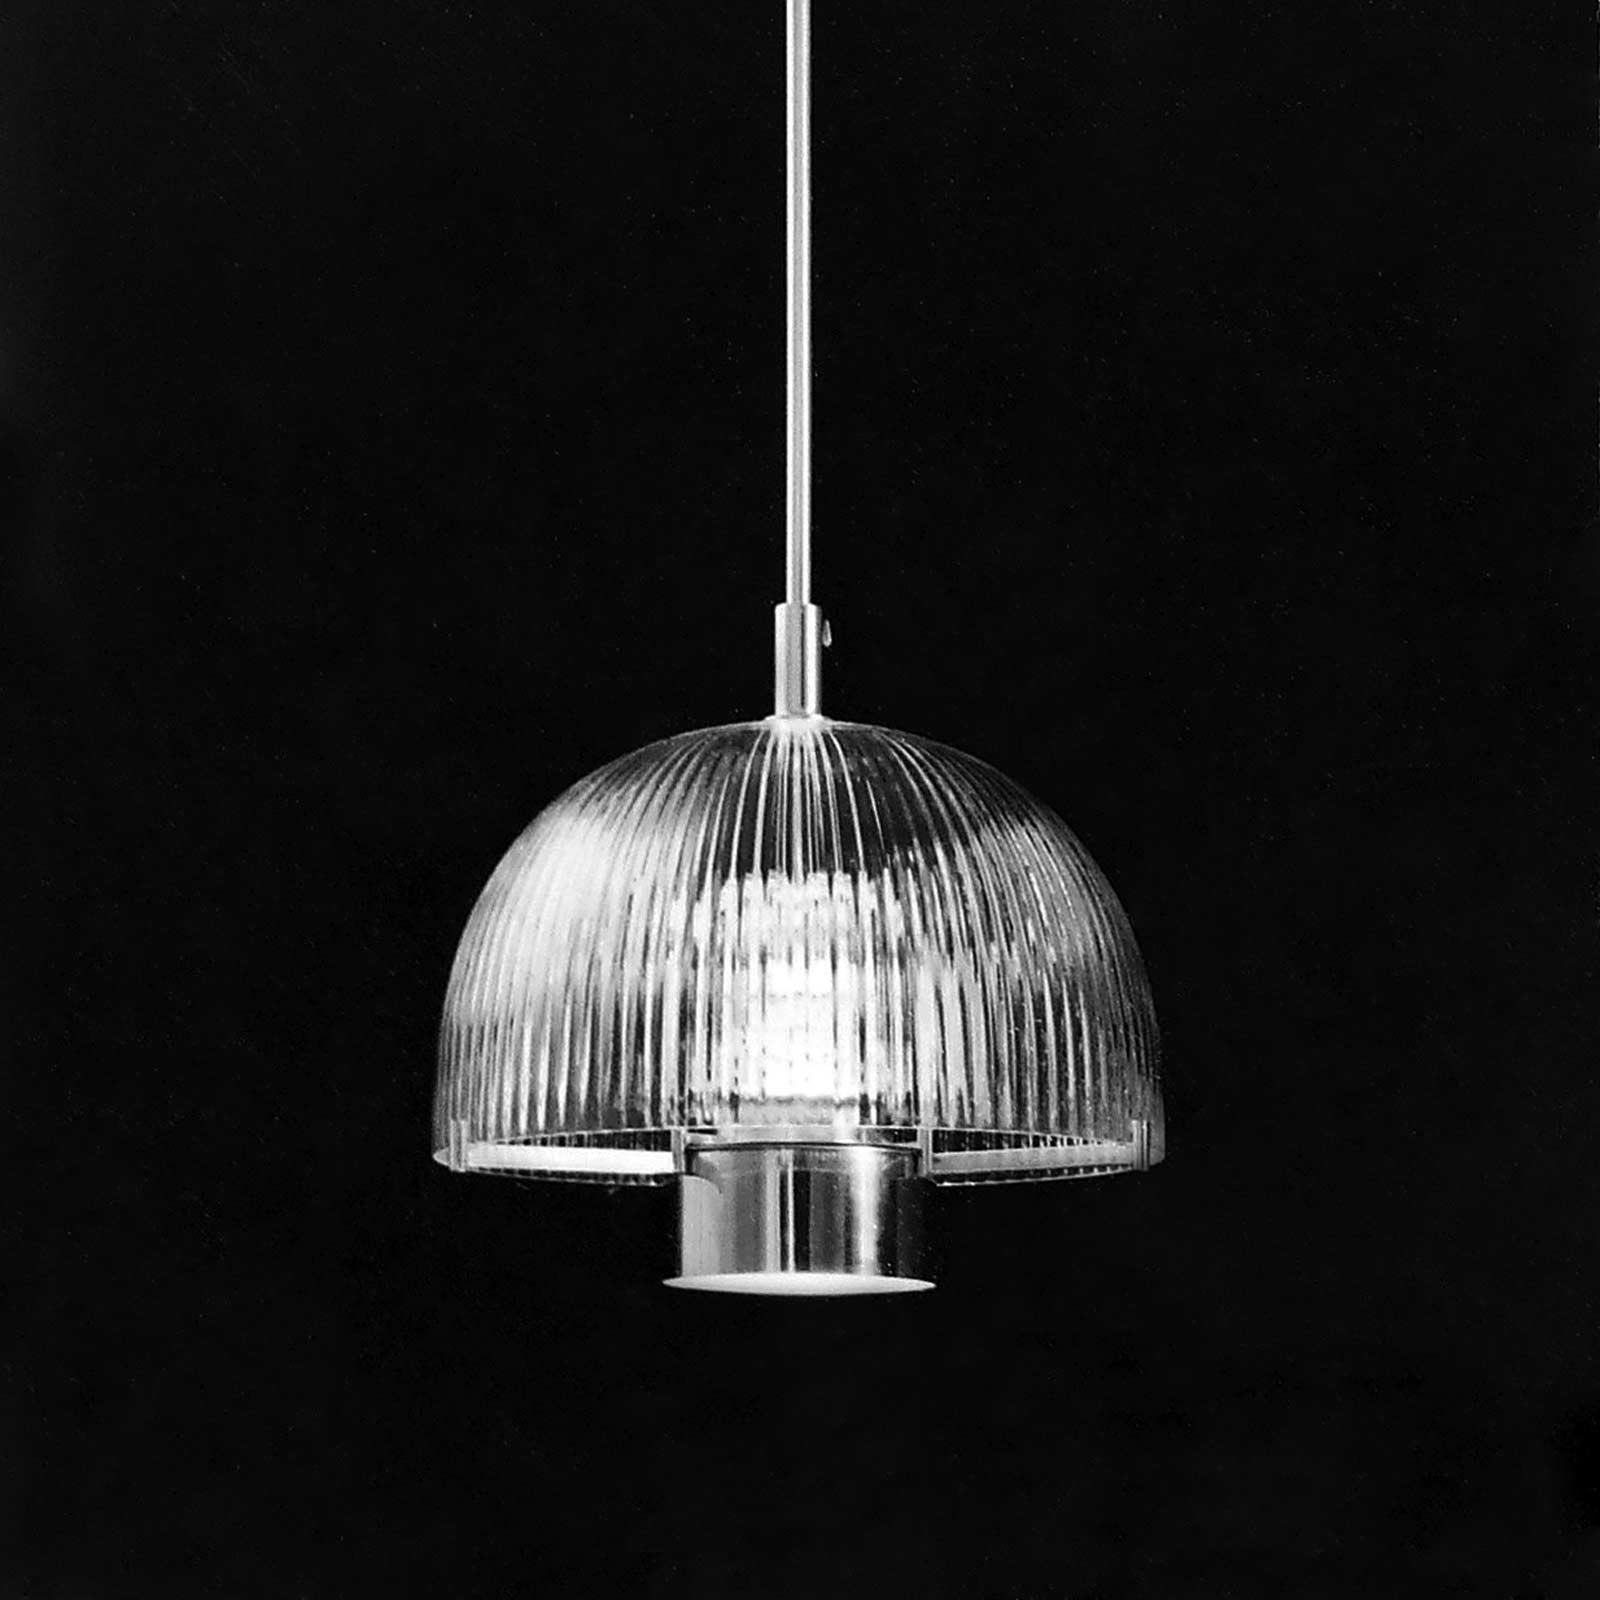 Prov. Pendlad takarmatur med fastblåst räfflad kupa, blåst i Ängshyttan, Nybro 1967. Foto: John Selbing